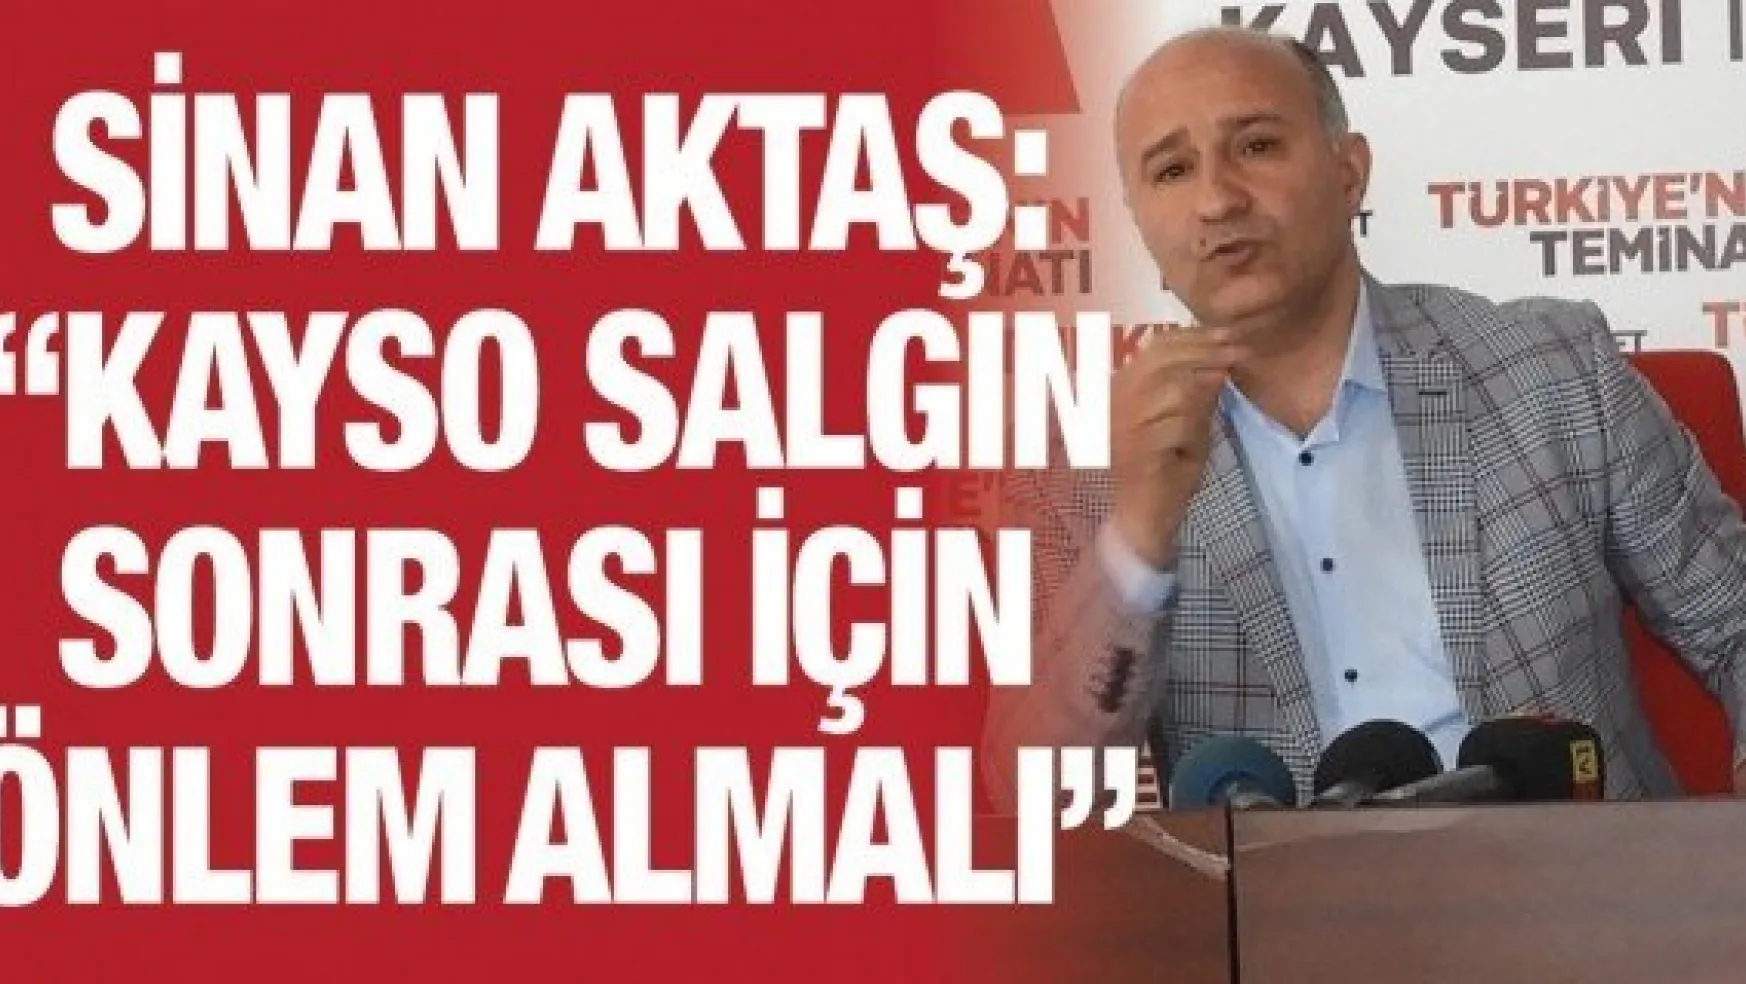 Sinan Aktaş: 'KAYSO salgın sonrası için önlem almalı'